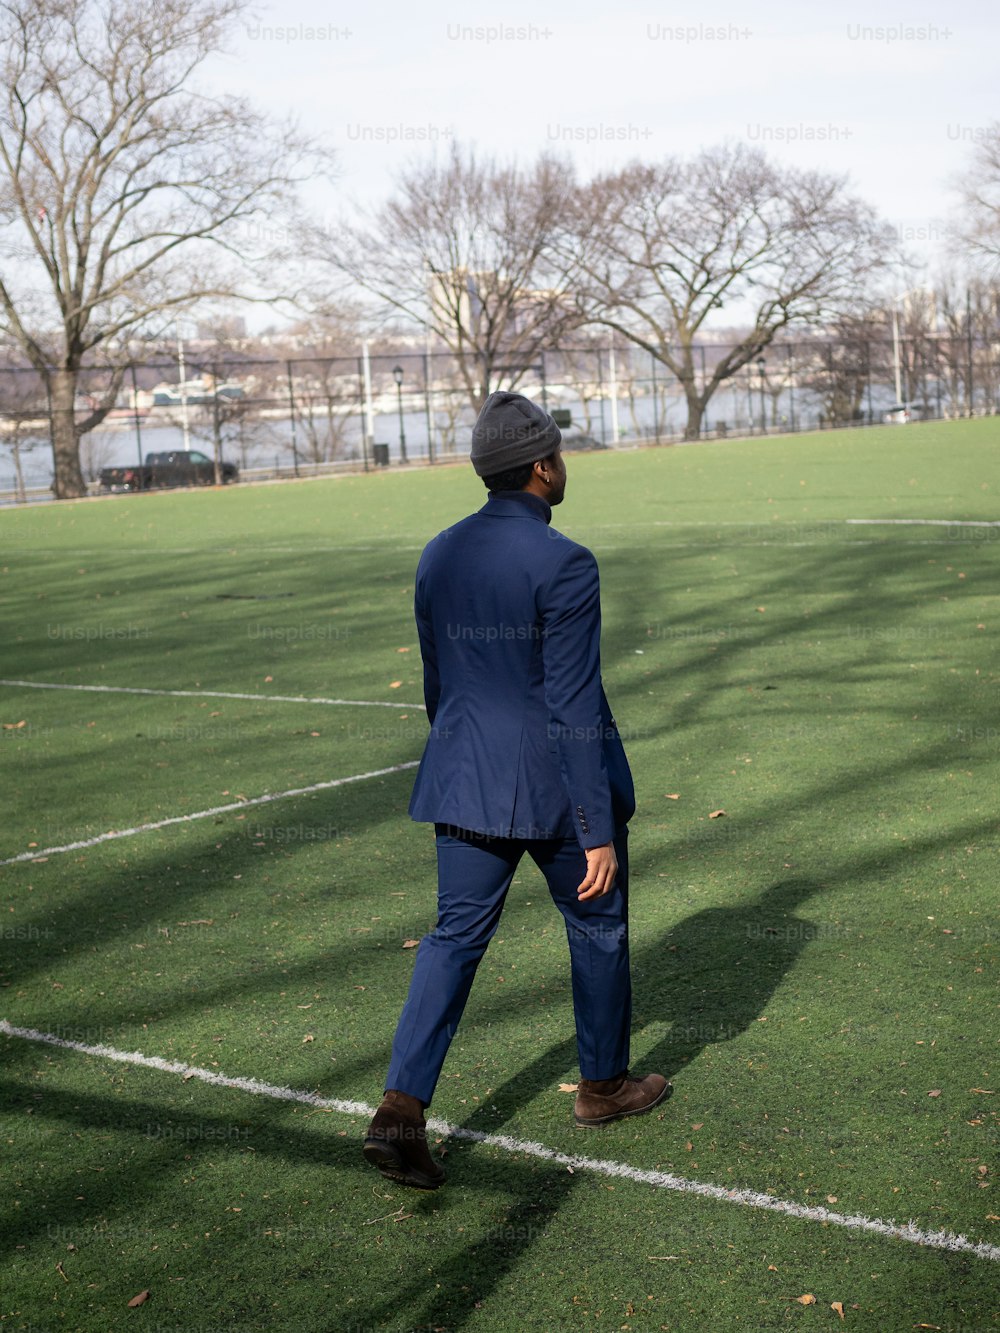 スーツと帽子をかぶった男が野原を歩いている